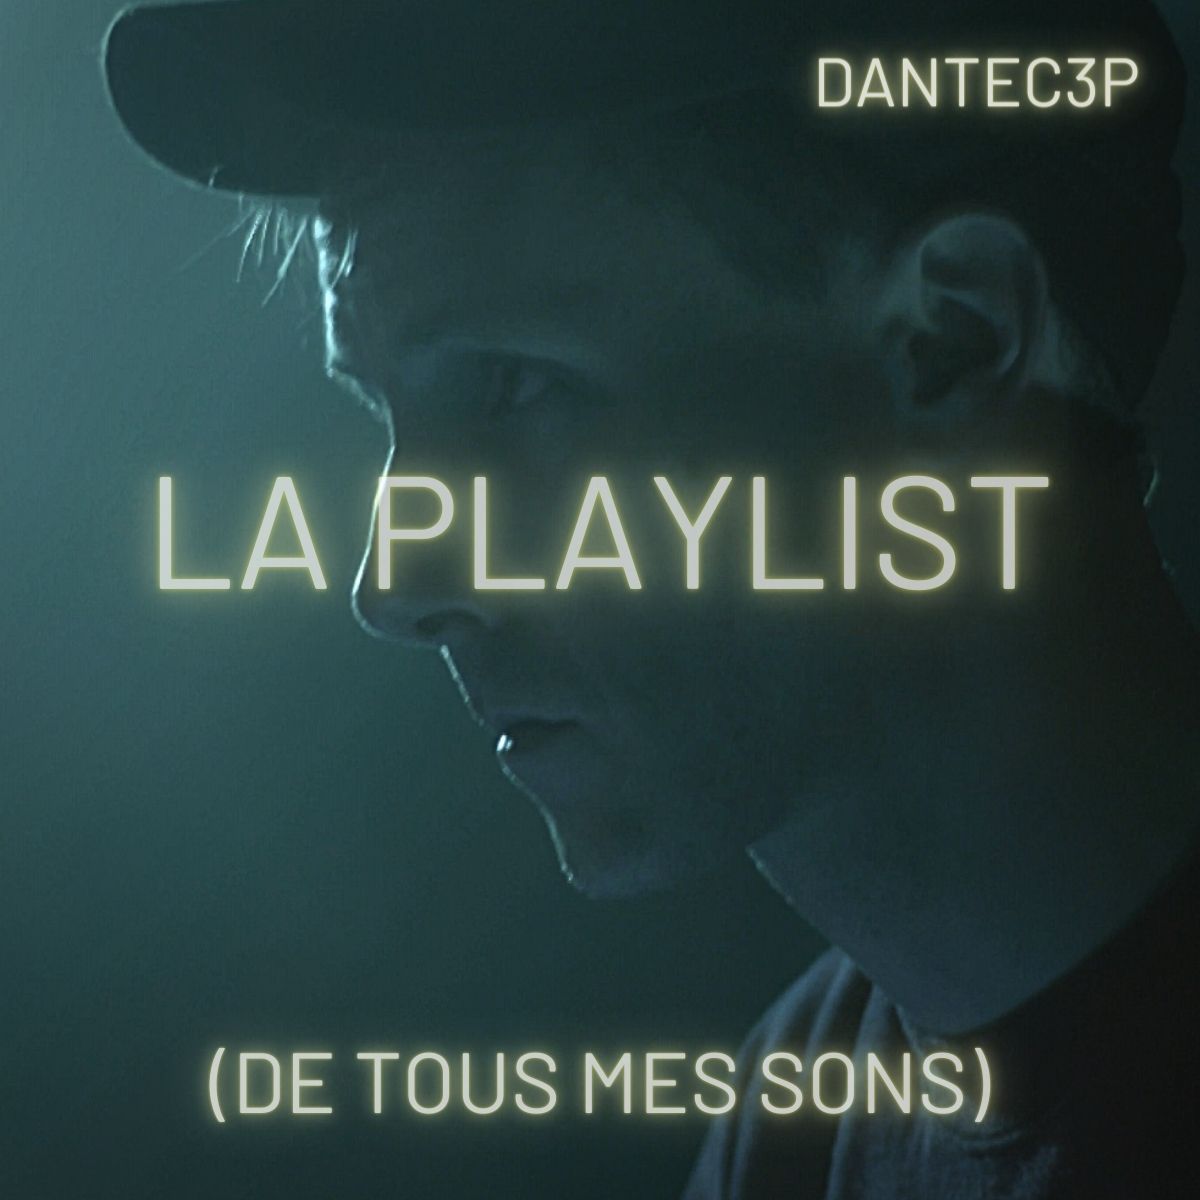 dantec3p playlist